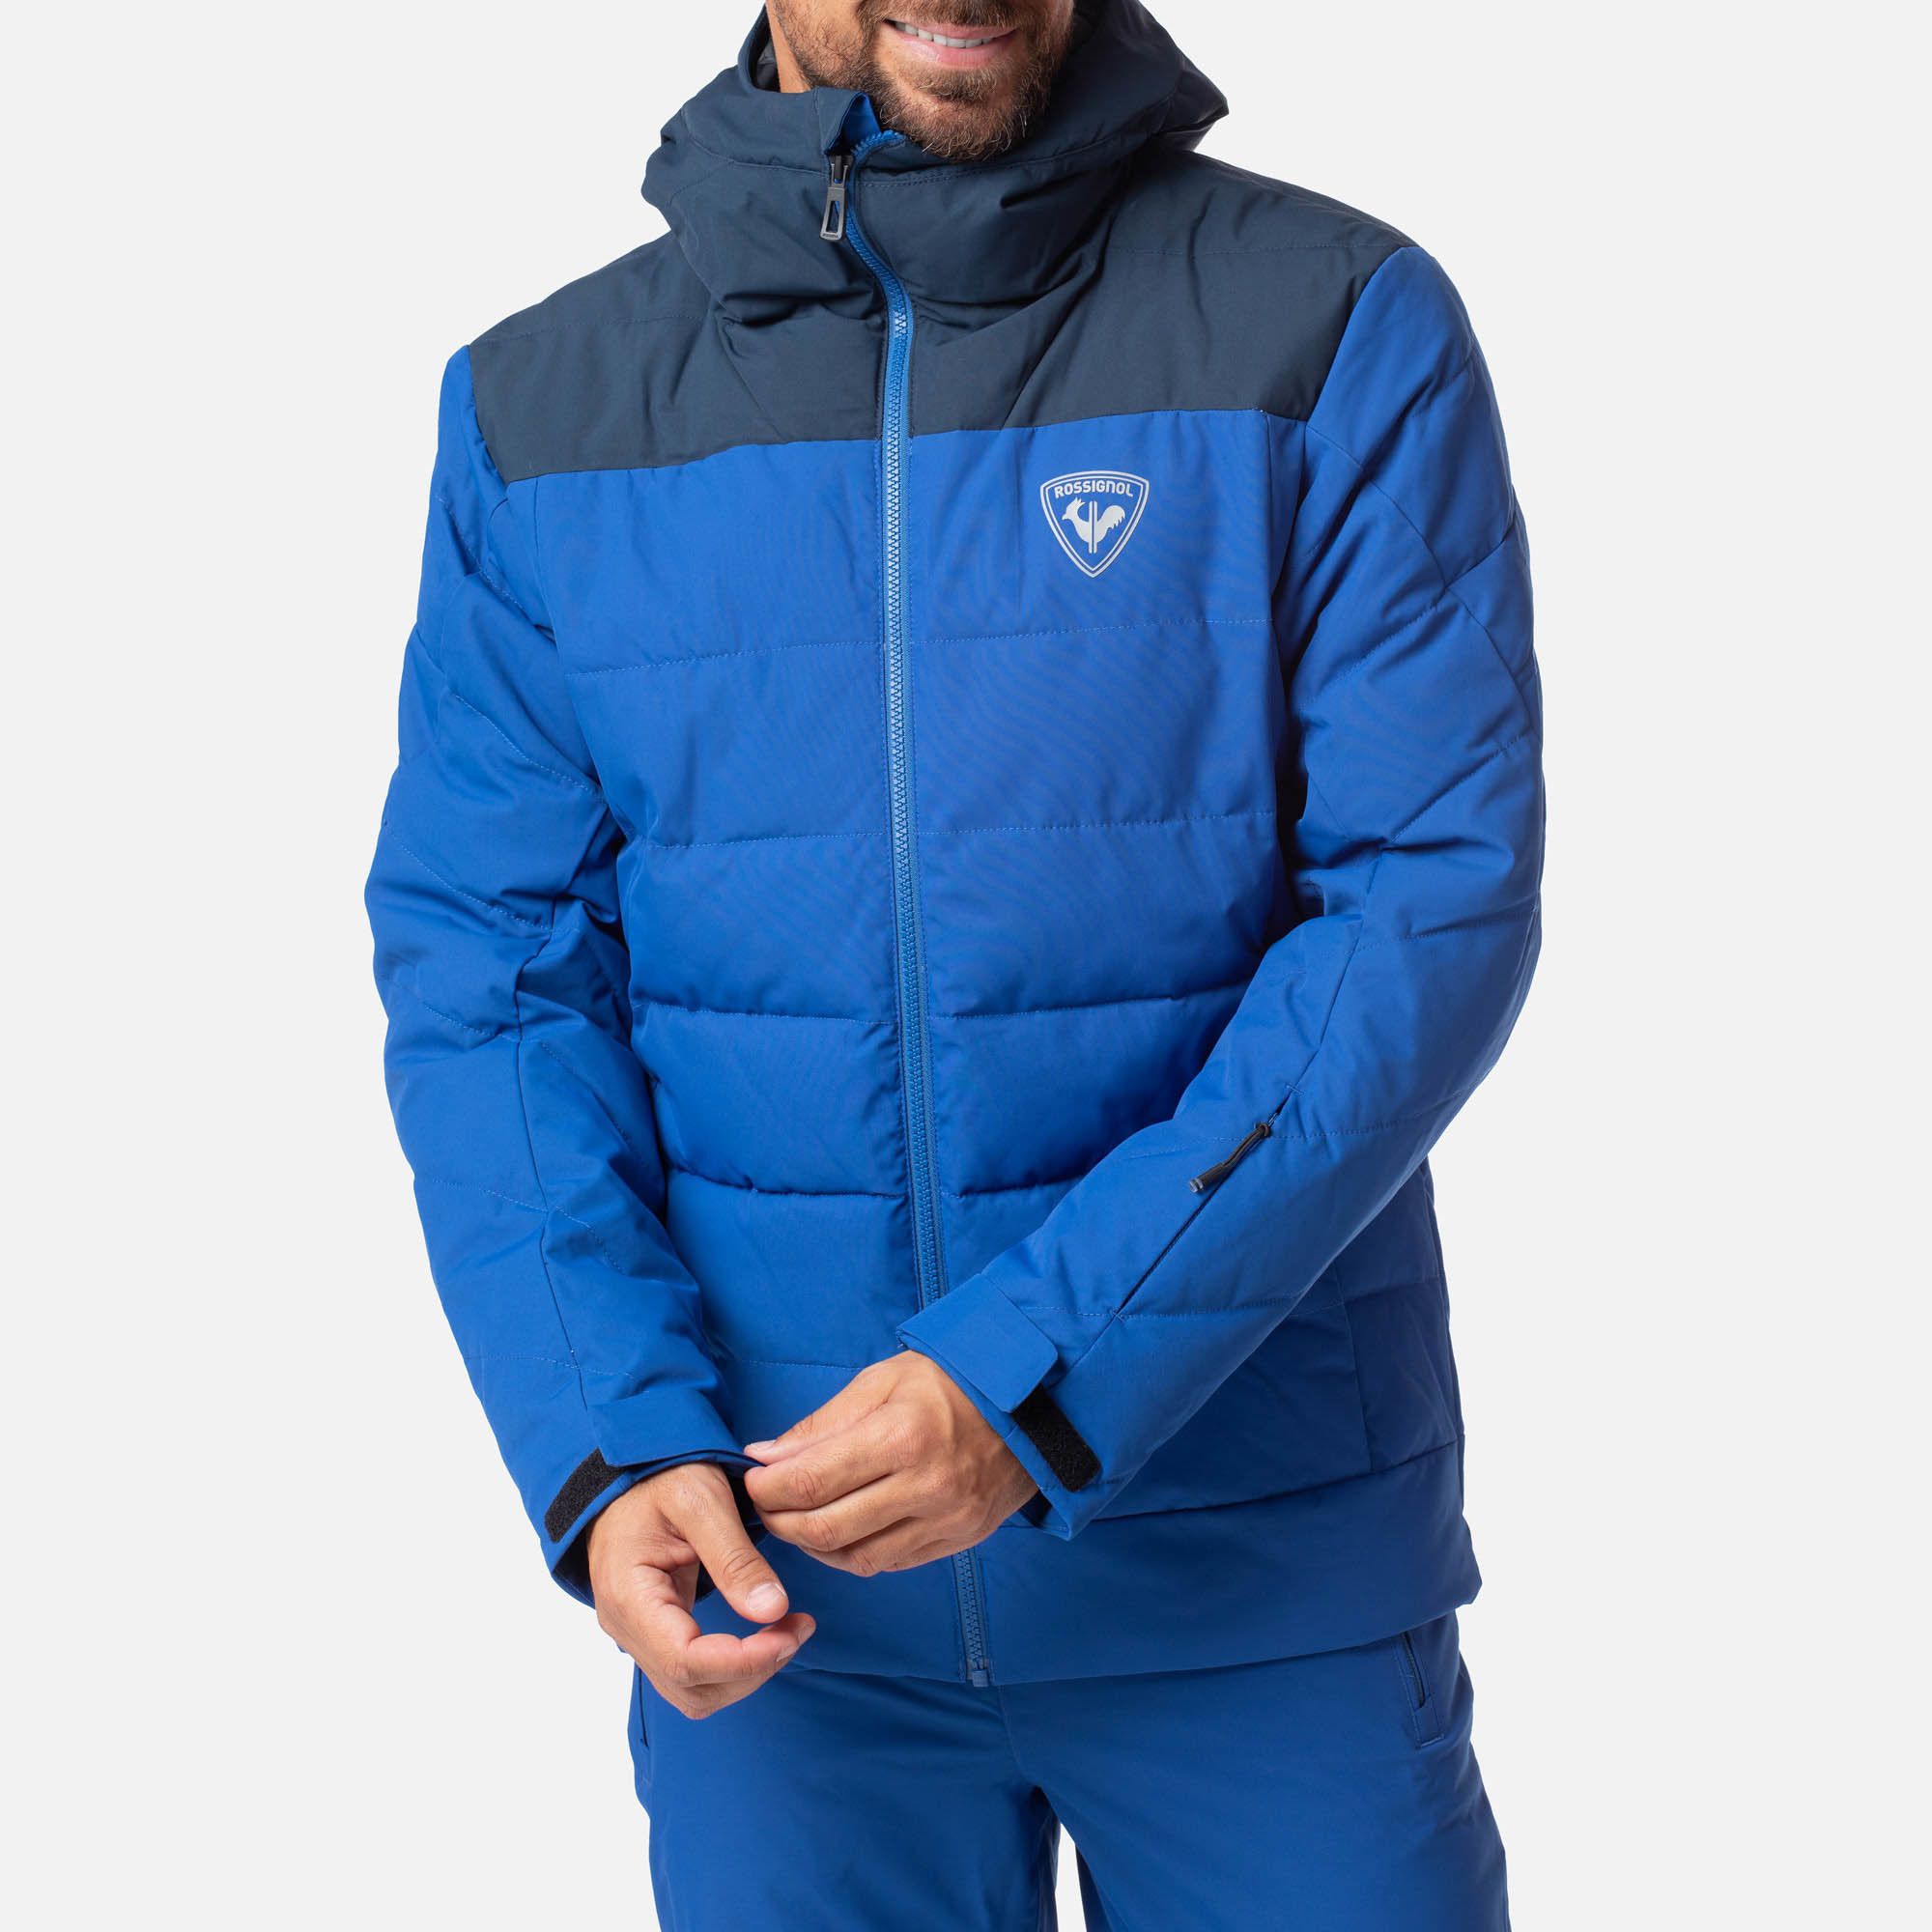 Rossignol Rapide Jacket - Chaqueta de esquí - Hombre